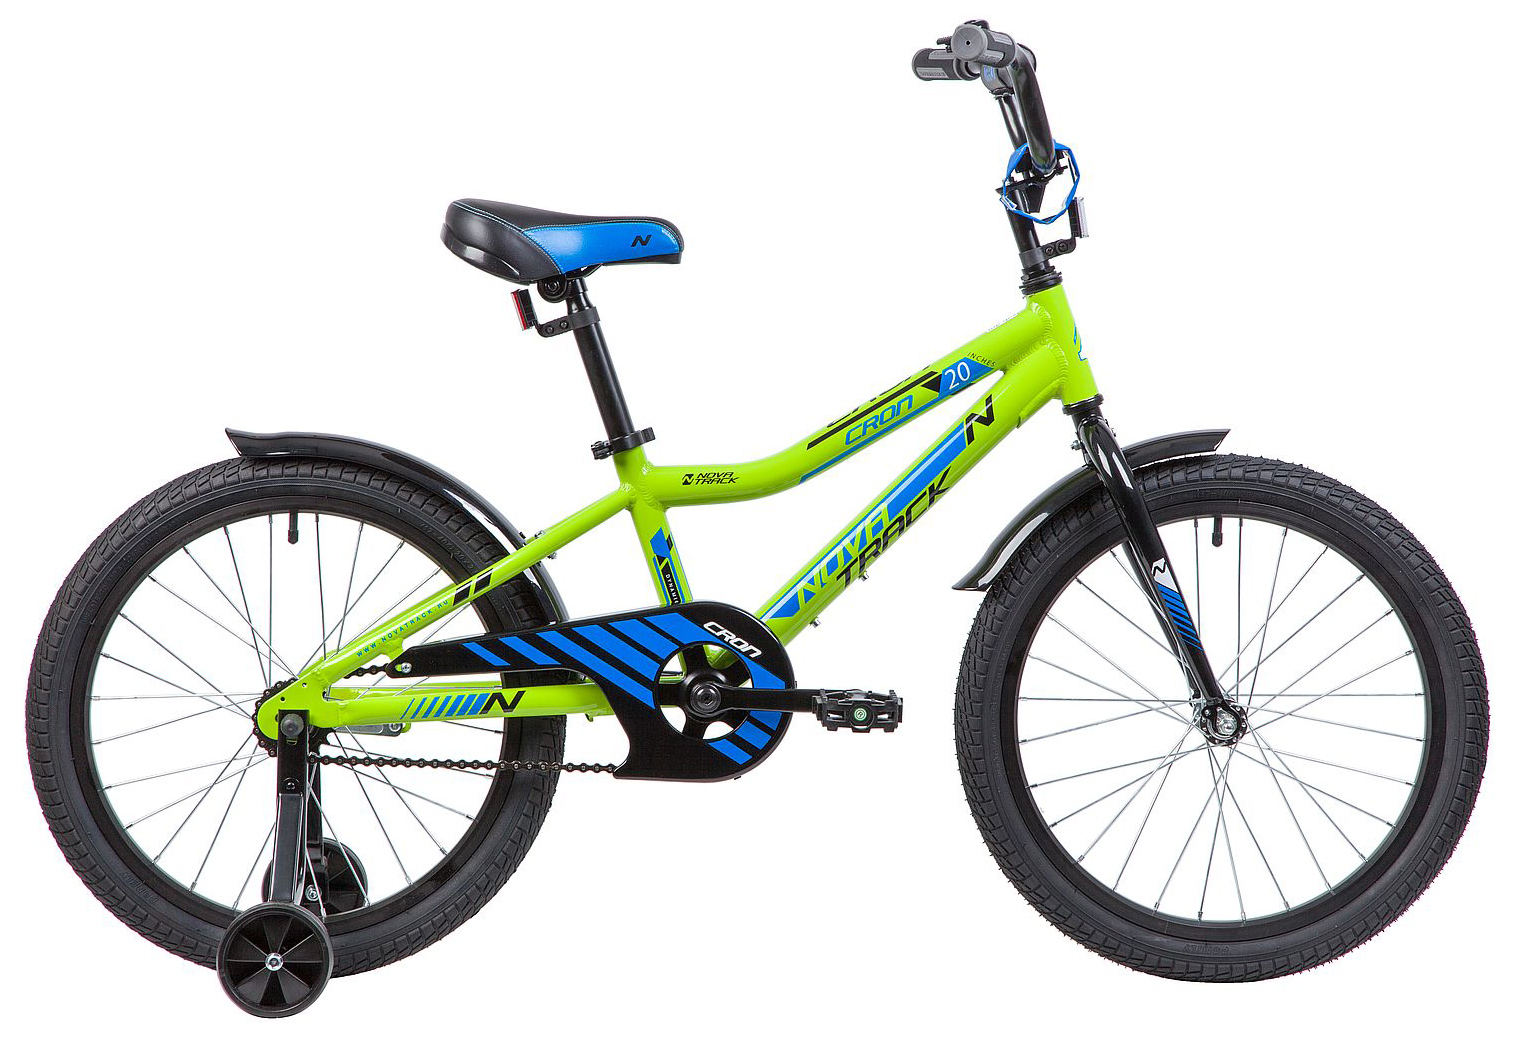  Отзывы о Детском велосипеде Novatrack Cron 20 2019